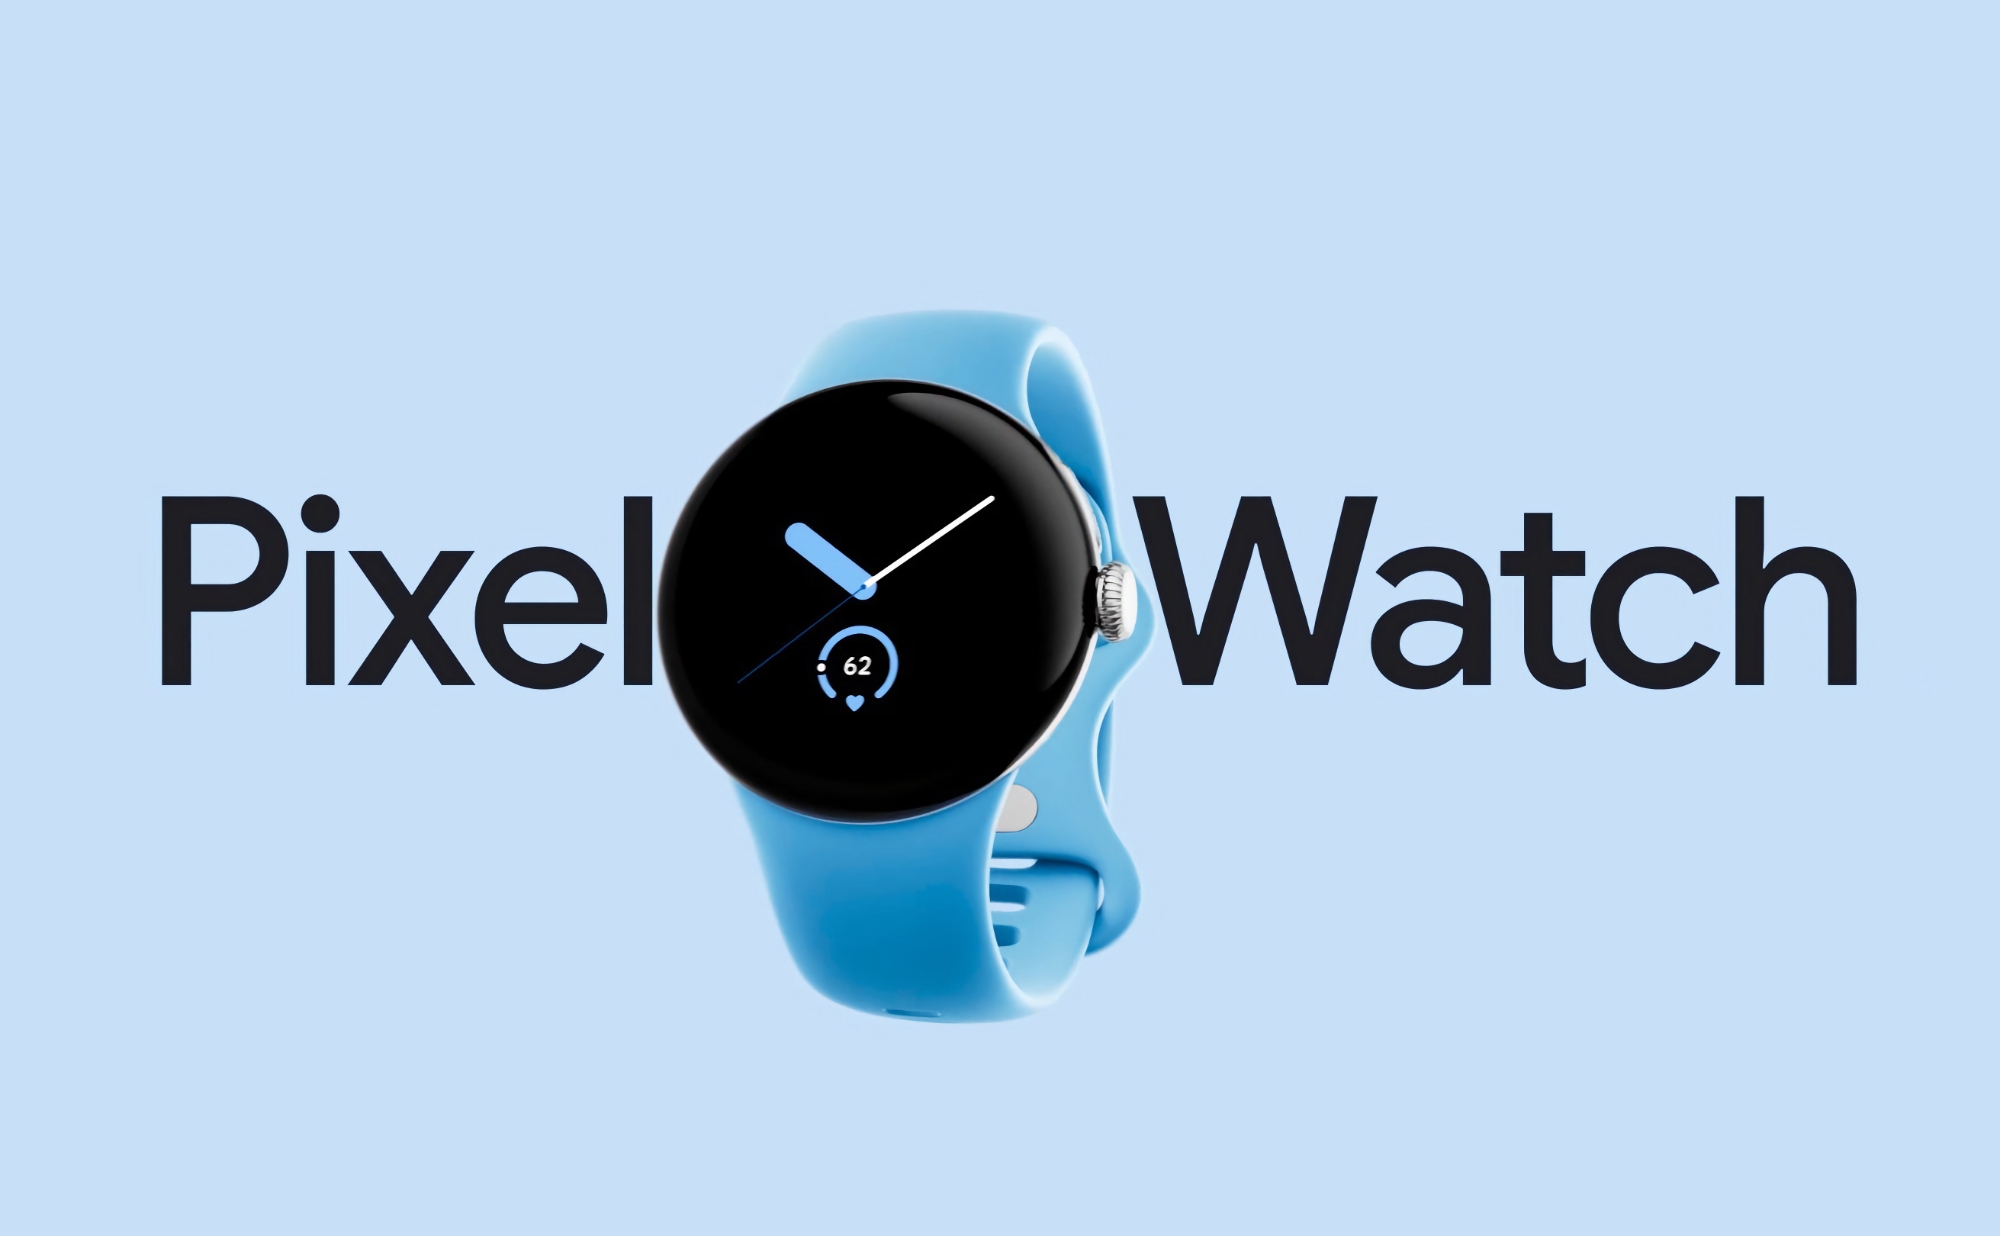 L'originale Google Pixel Watch con Wi-Fi è disponibile su Amazon al prezzo scontato di 74 dollari.